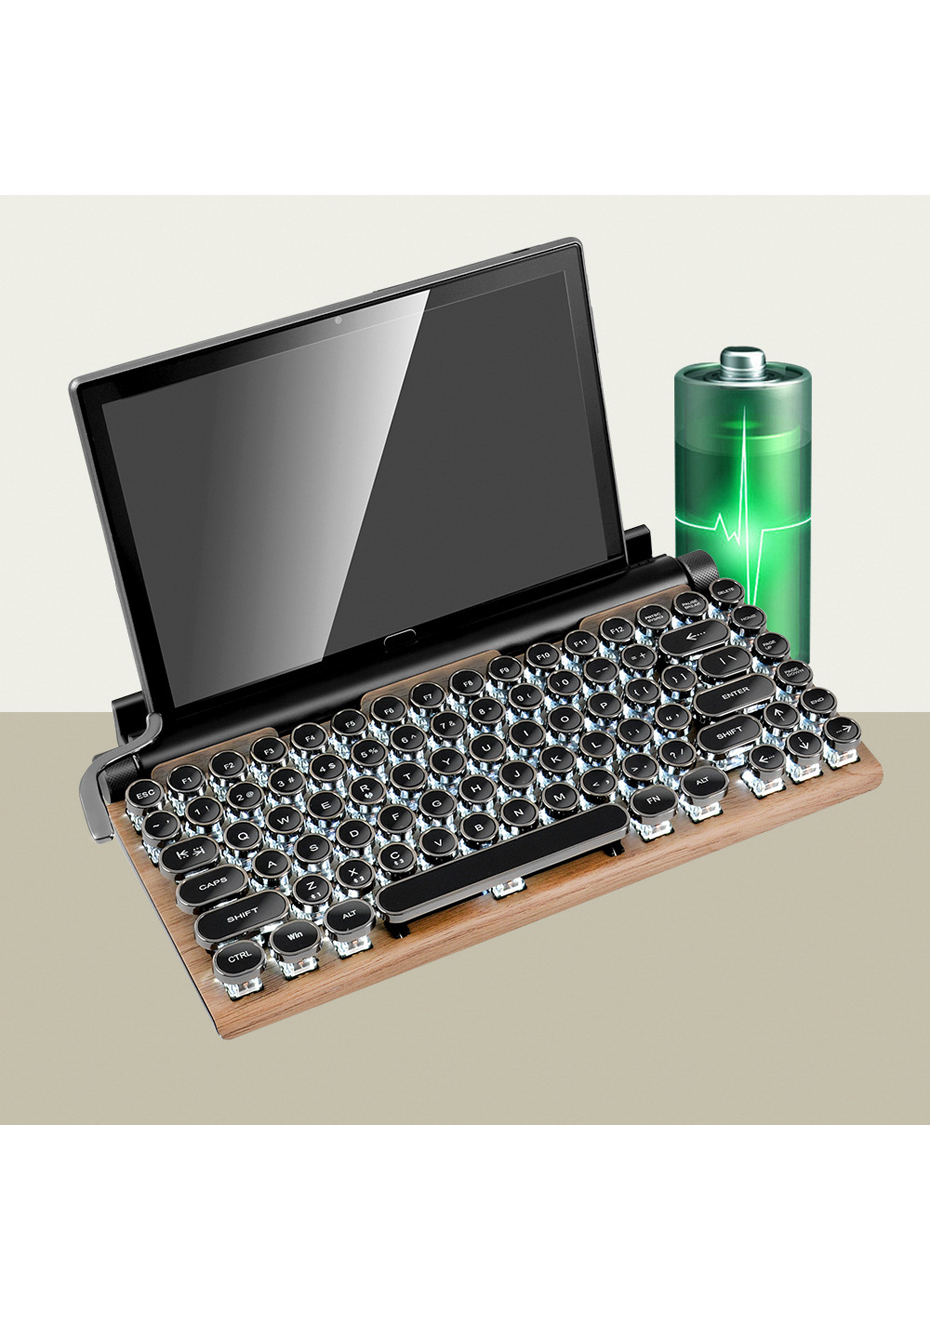 bluetooth typewriter keyboard